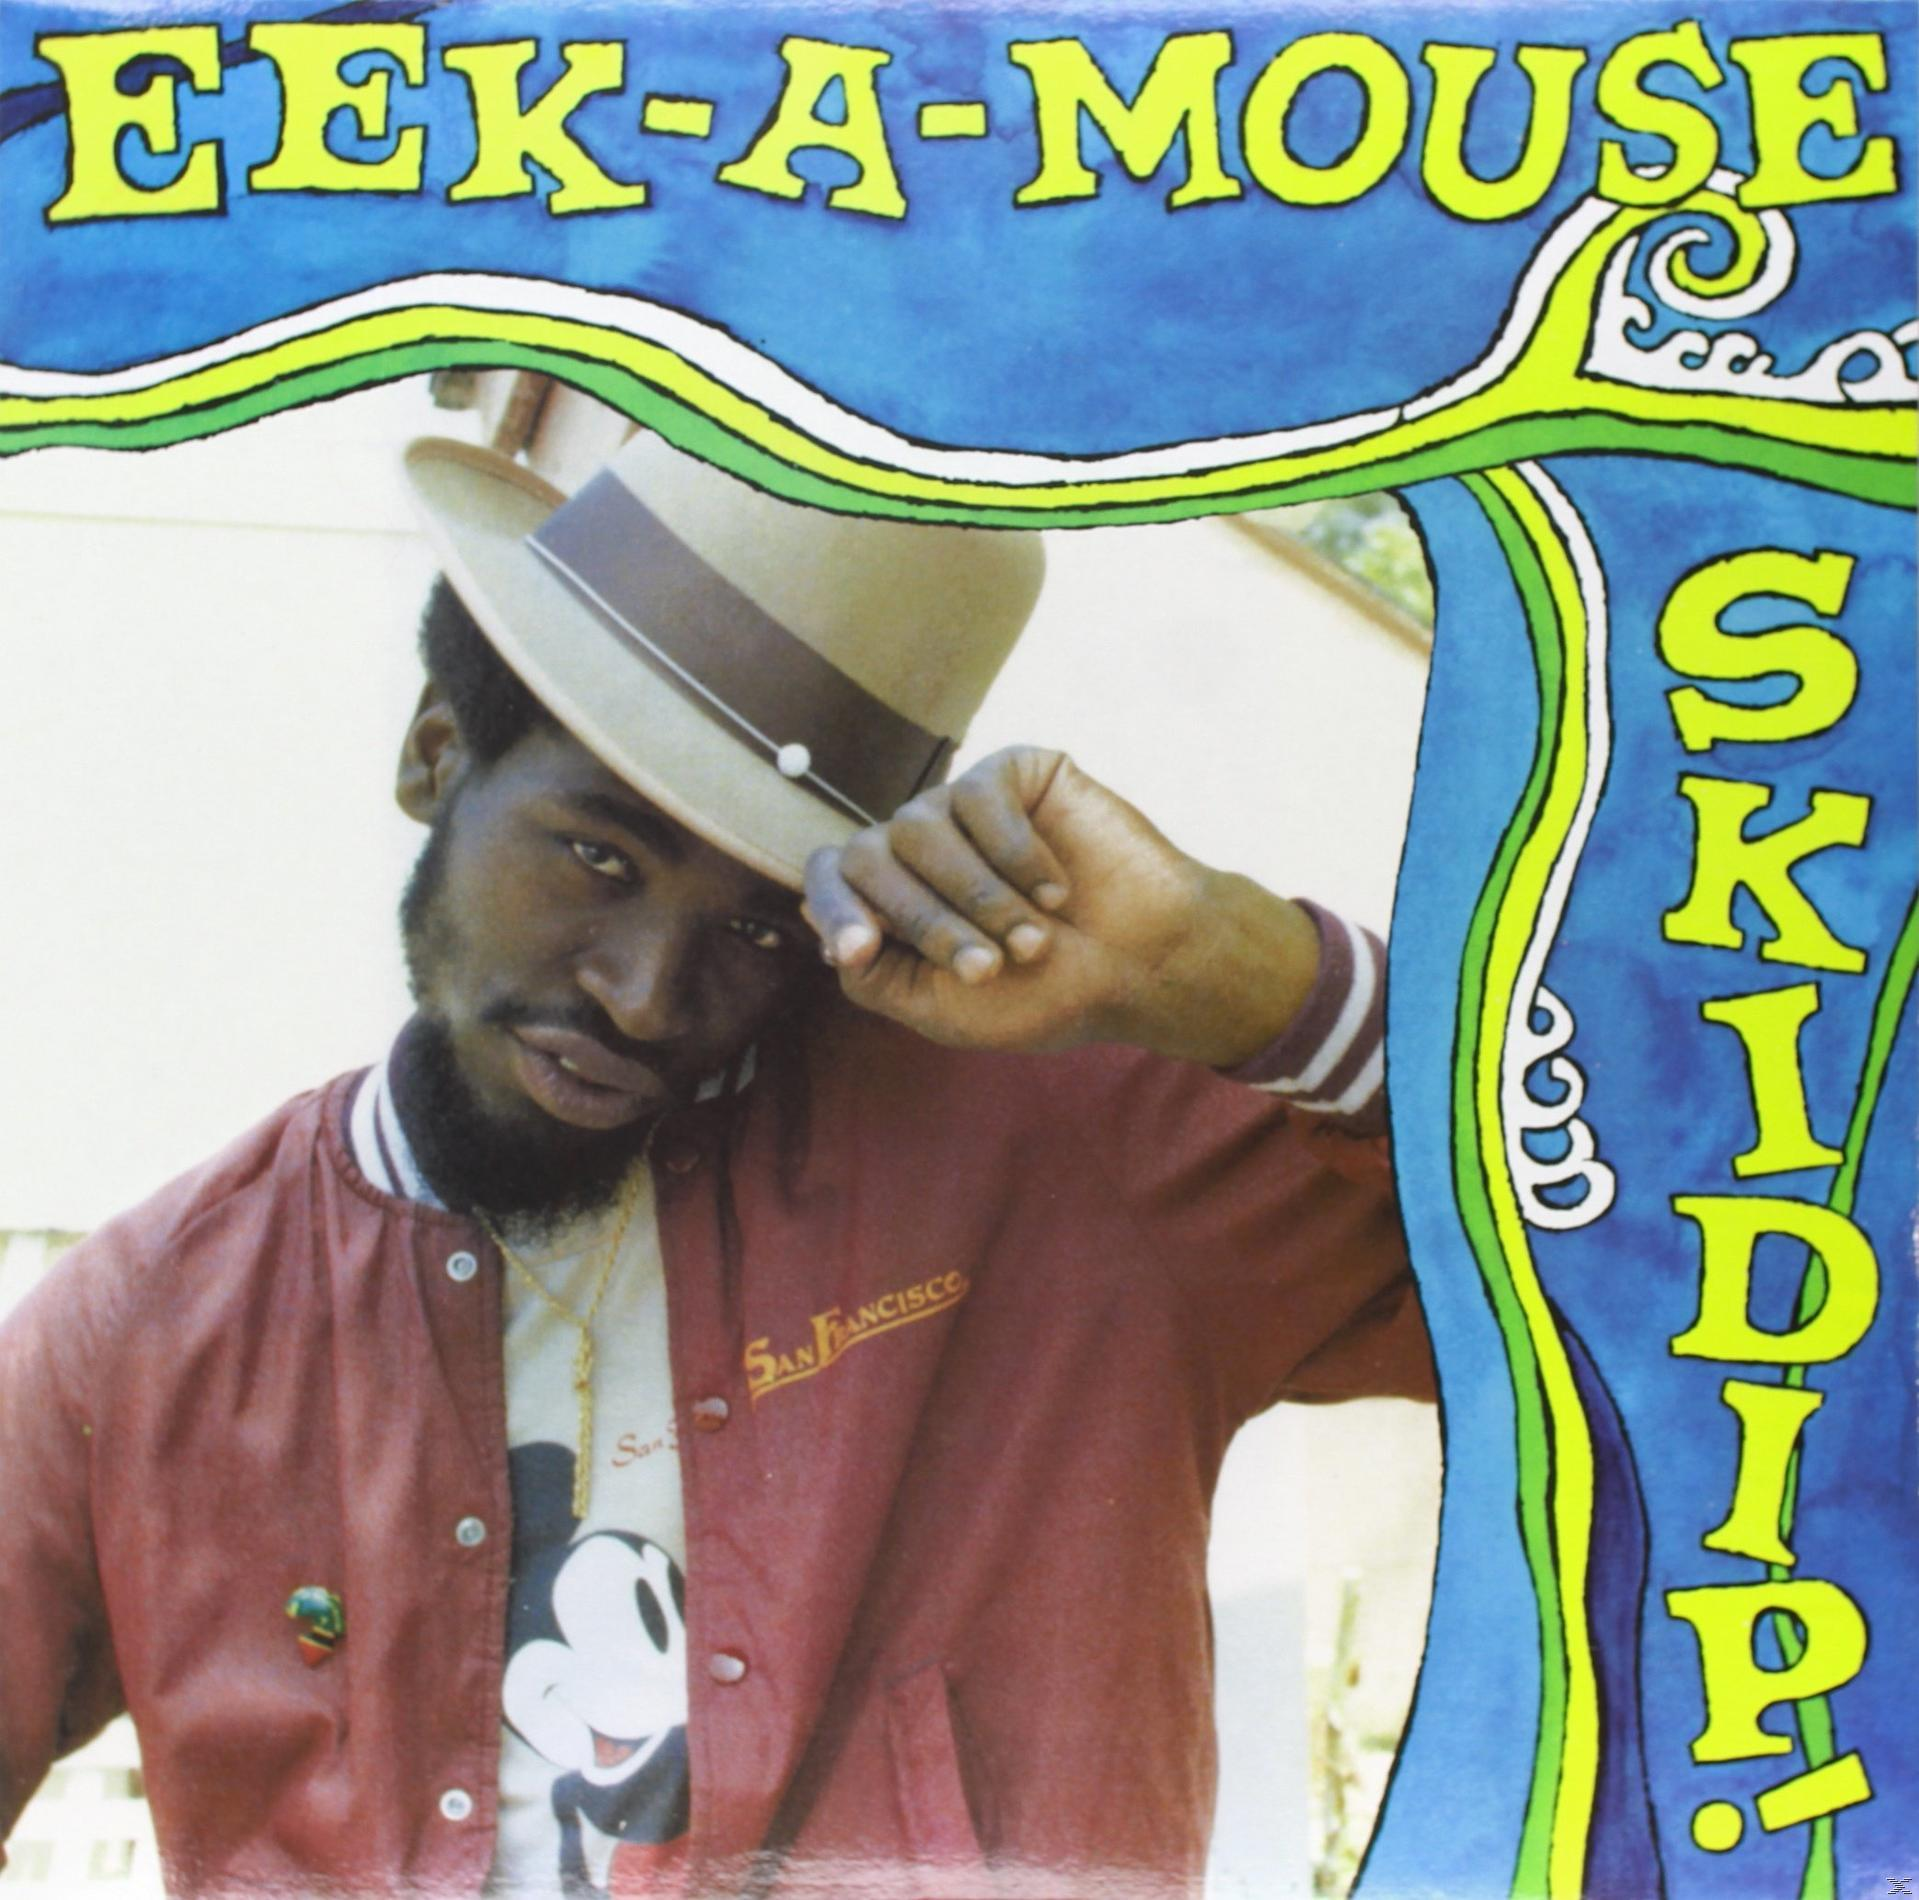 Eek-A-Mouse - Skidip! - (Vinyl)